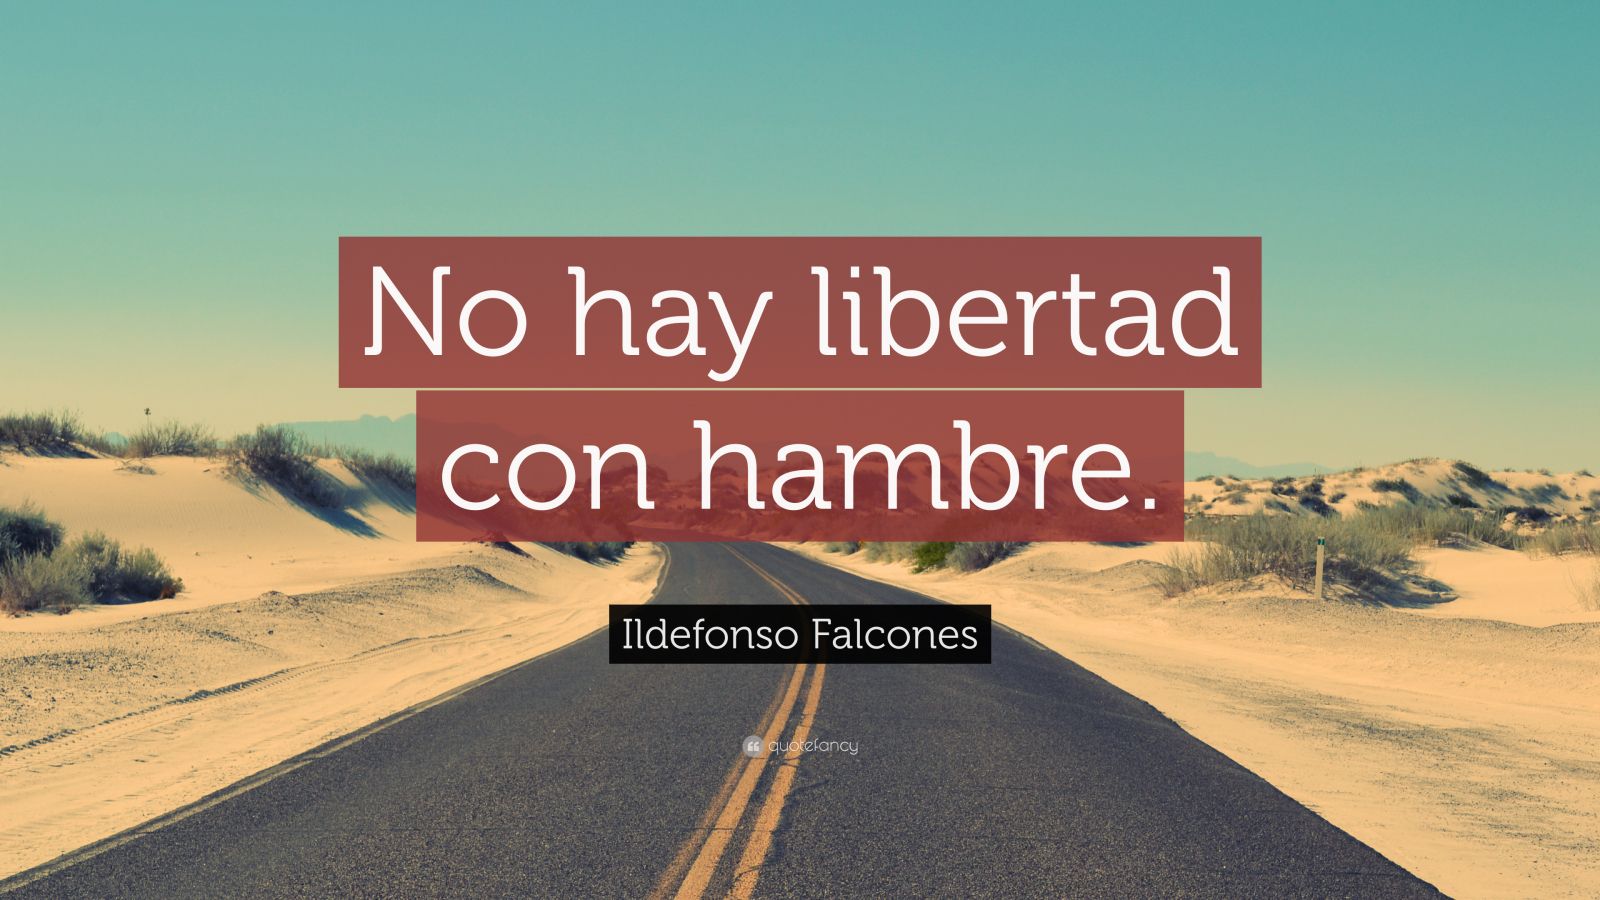 Ildefonso Falcones Quote: “No hay libertad con hambre.”